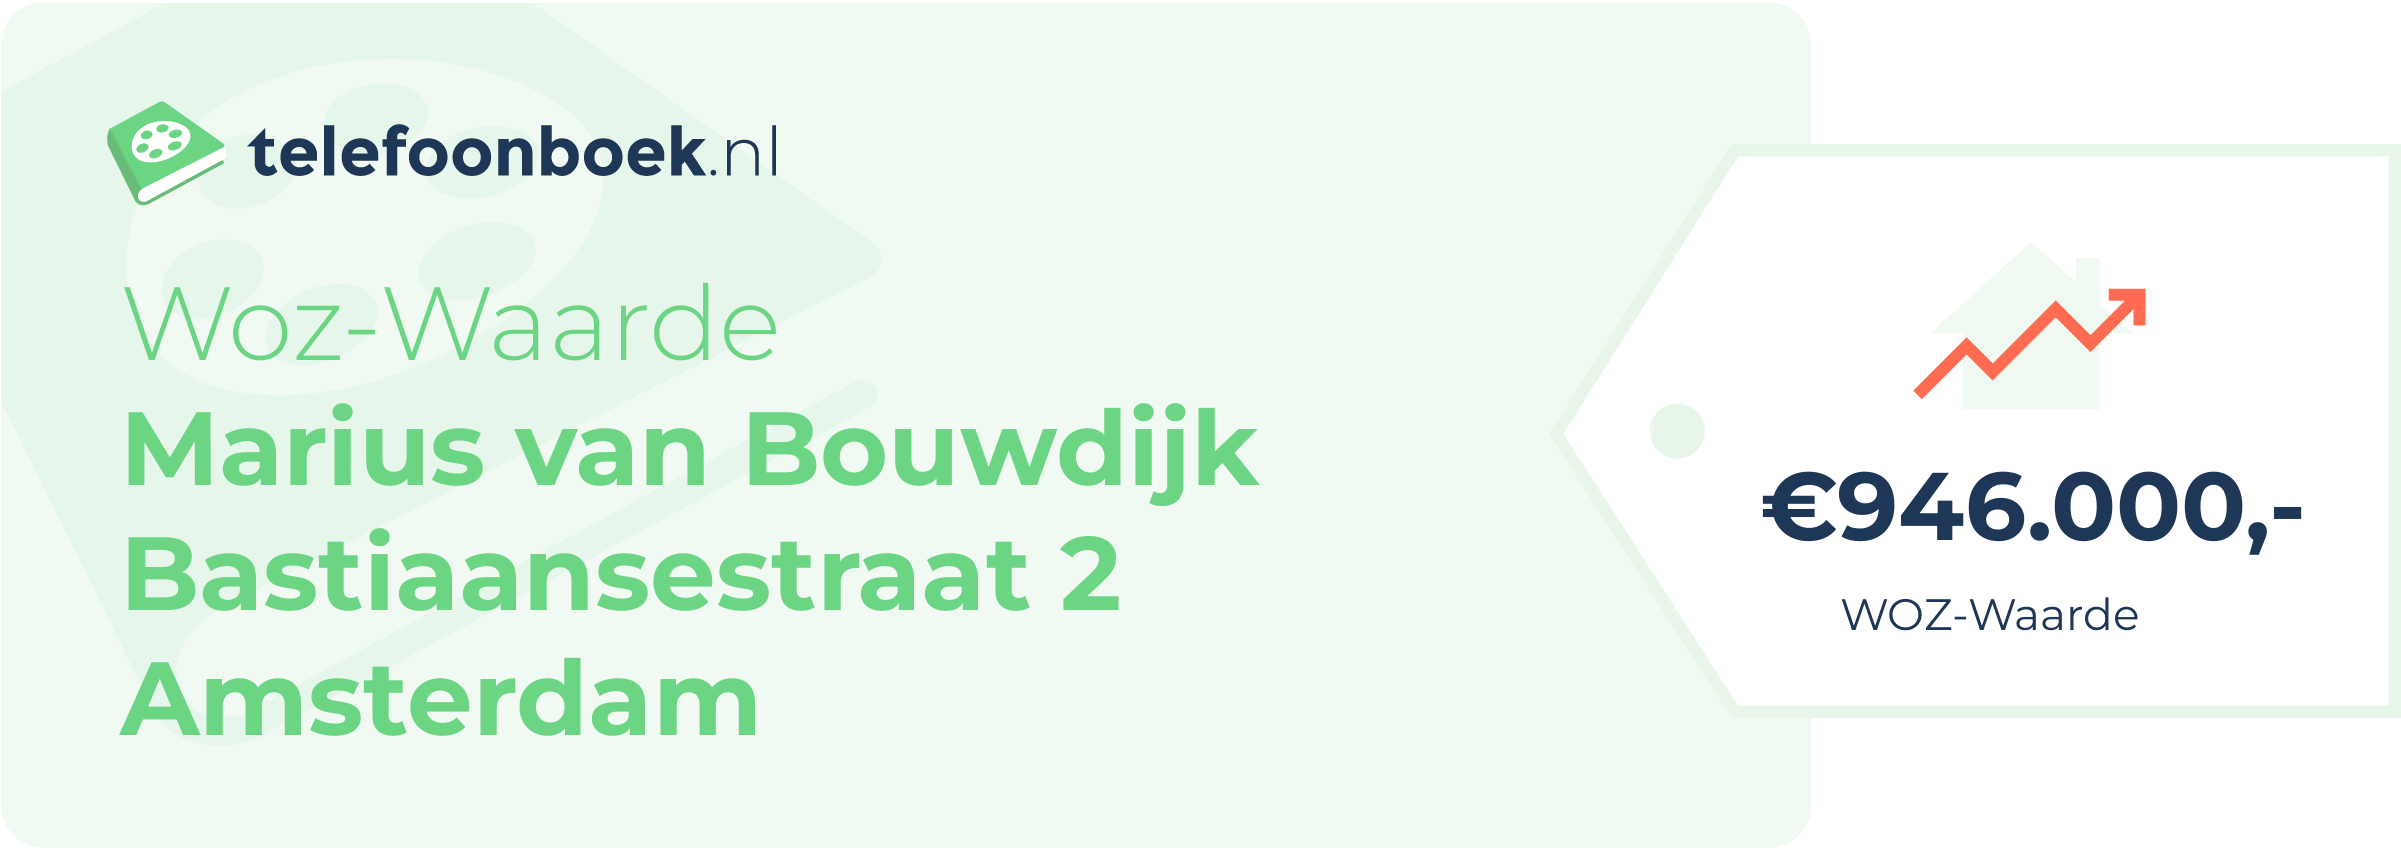 WOZ-waarde Marius Van Bouwdijk Bastiaansestraat 2 Amsterdam